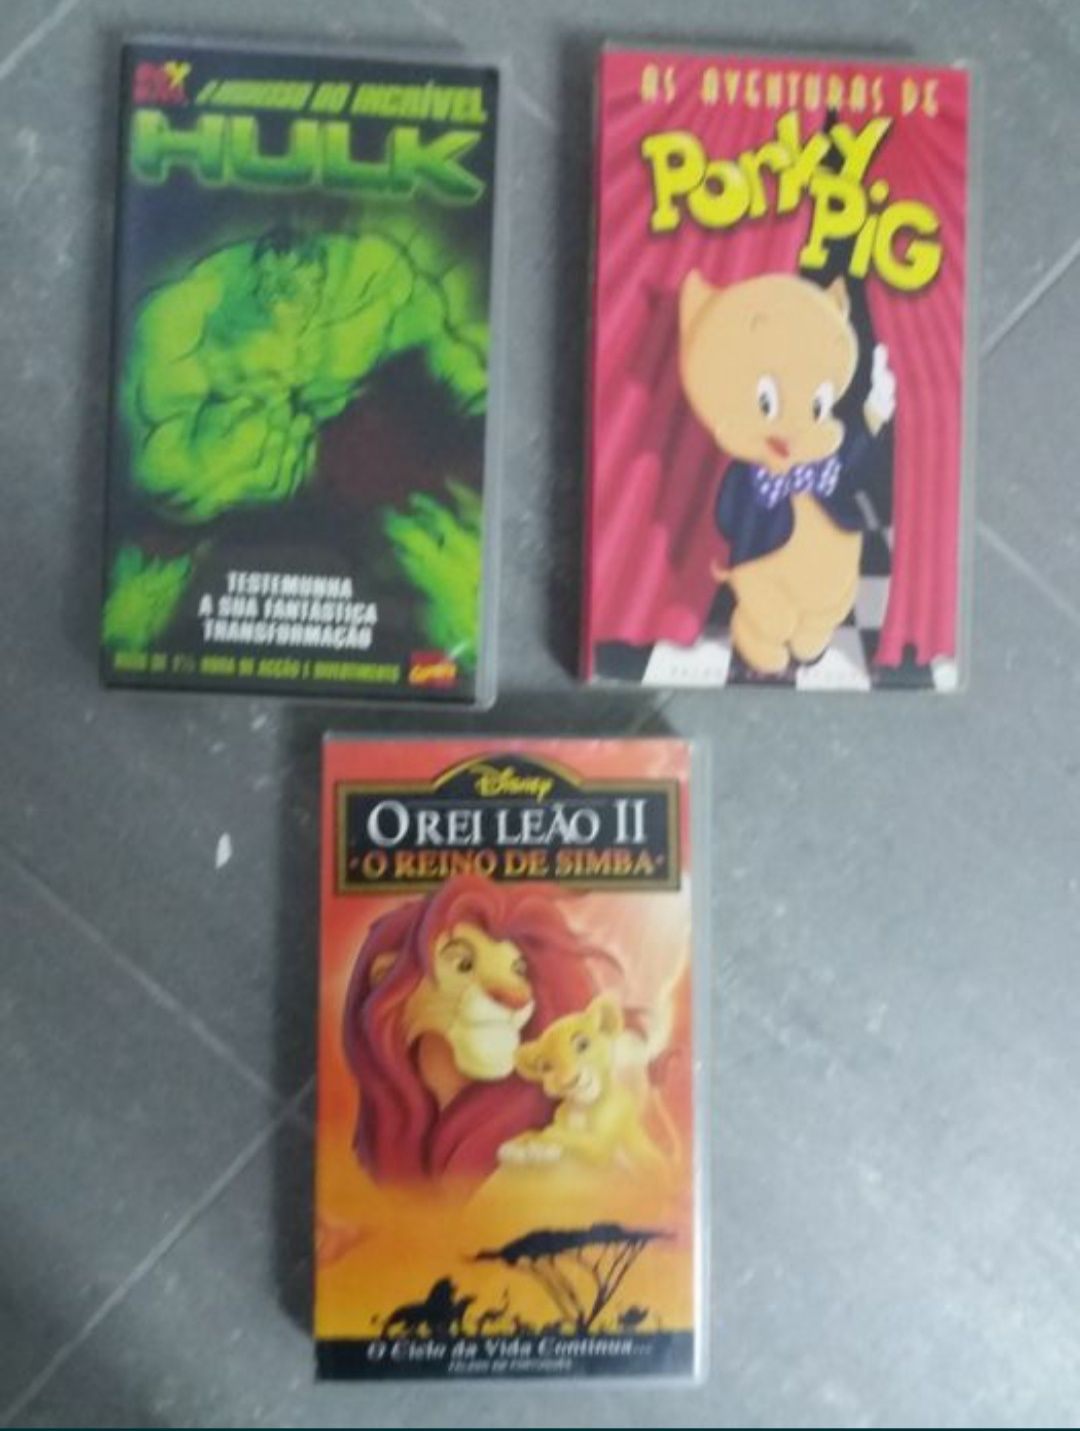 Cassete VHS desenhos animados.